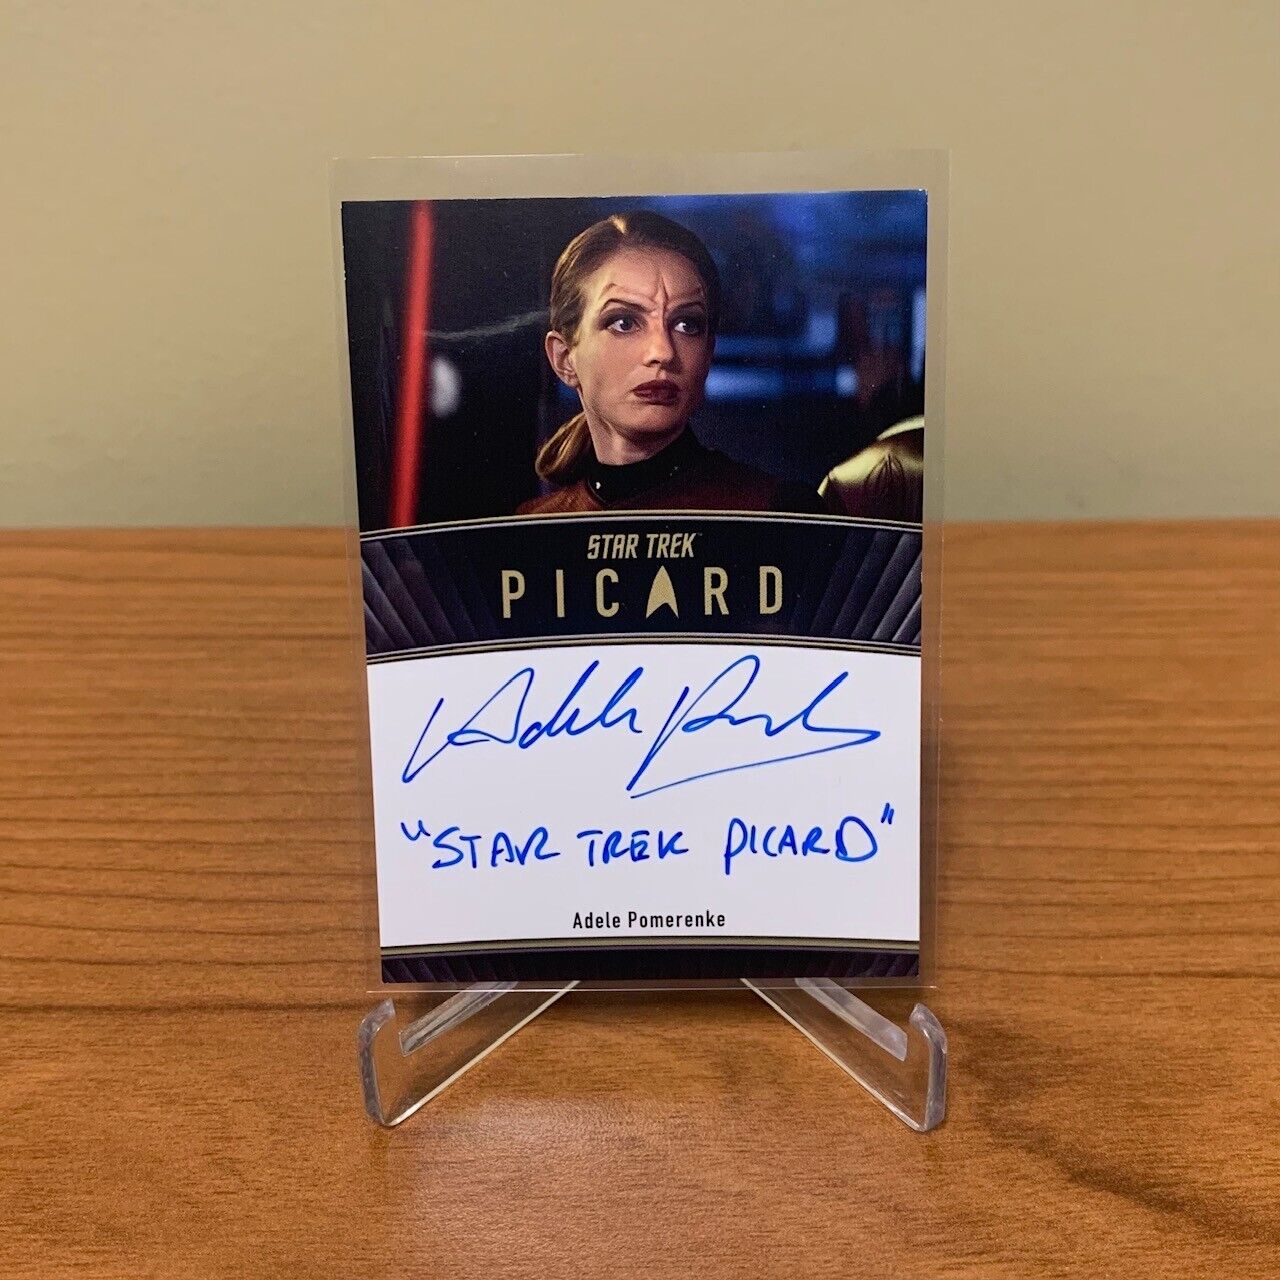 Star Trek Picard Seasons 2 & 3 ADELE POMERENKE Autograph Inscription SCARCE /50